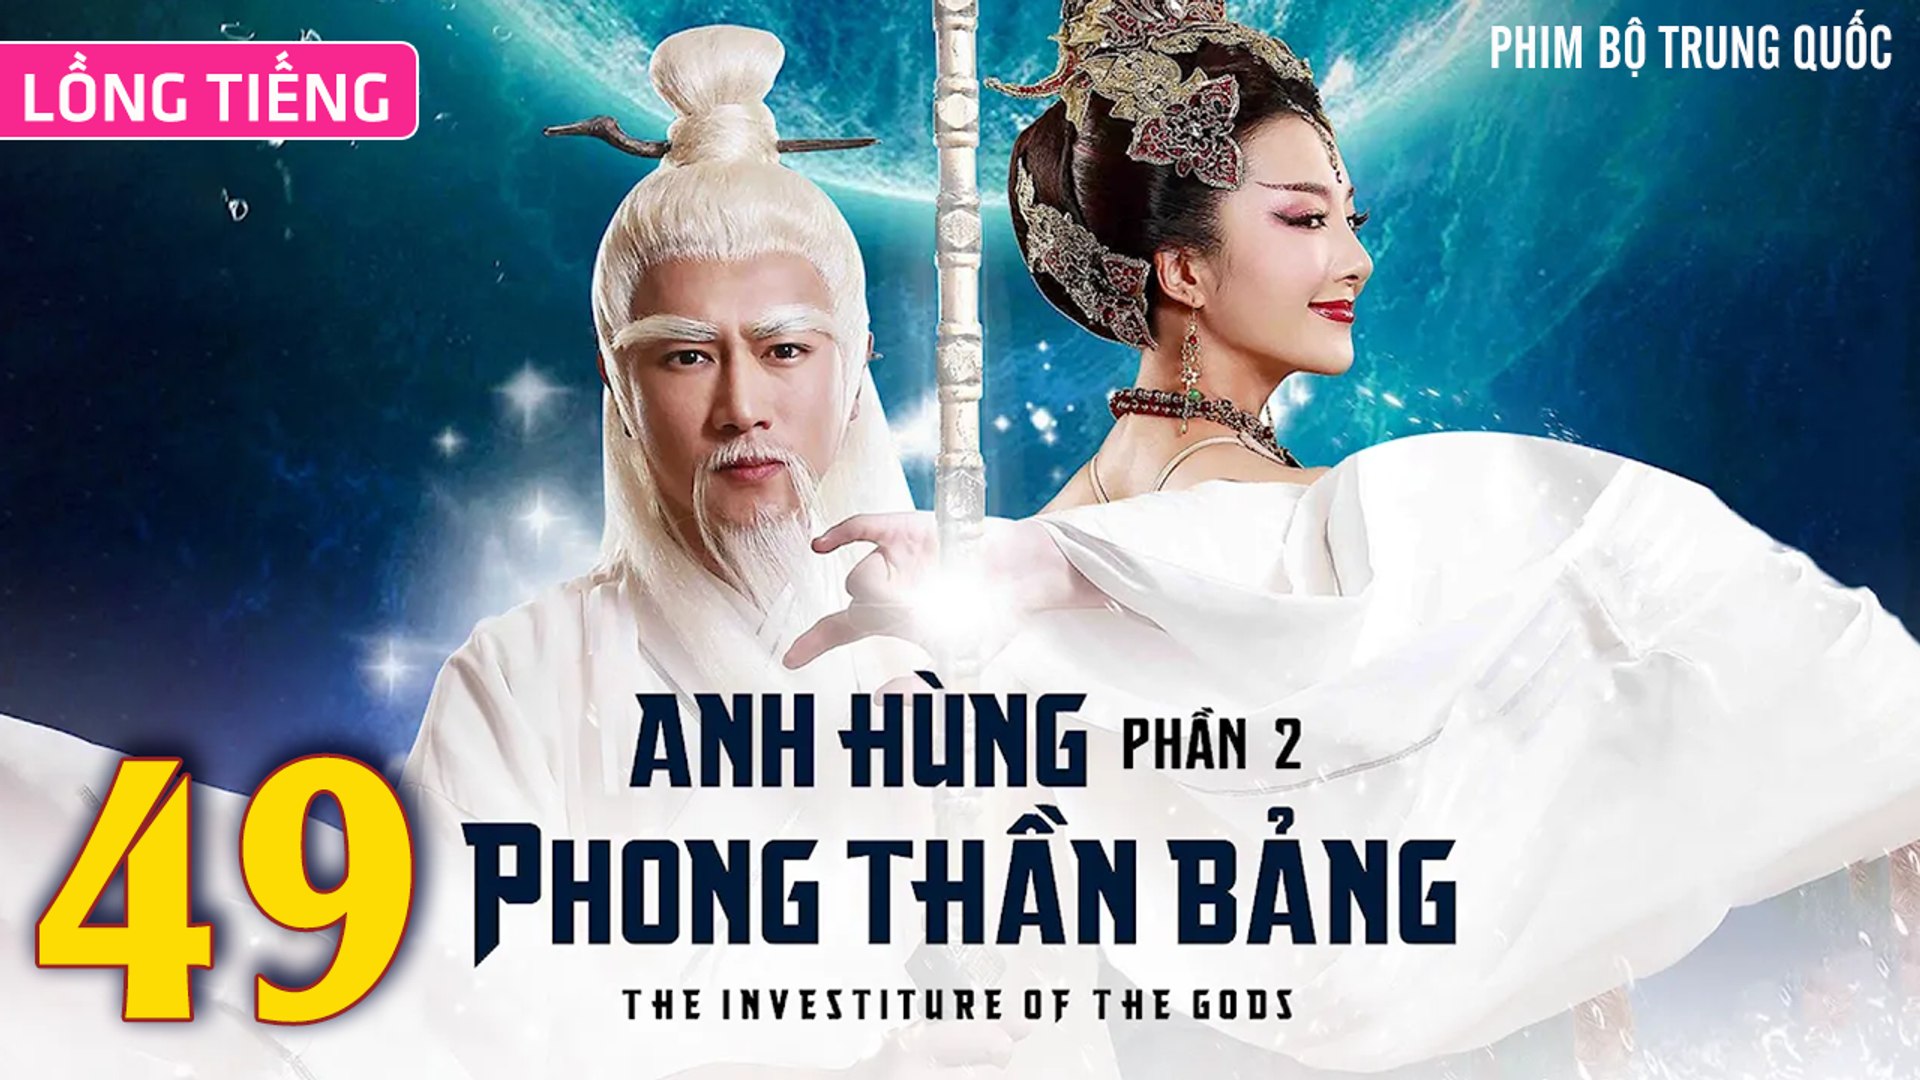 ⁣Phim Bộ Hay: ANH HÙNG PHONG THẦN BẢNG 2 - Tập 49 (Lồng Tiếng) | Phim Bộ Trung Quốc Hay Nhất 2023